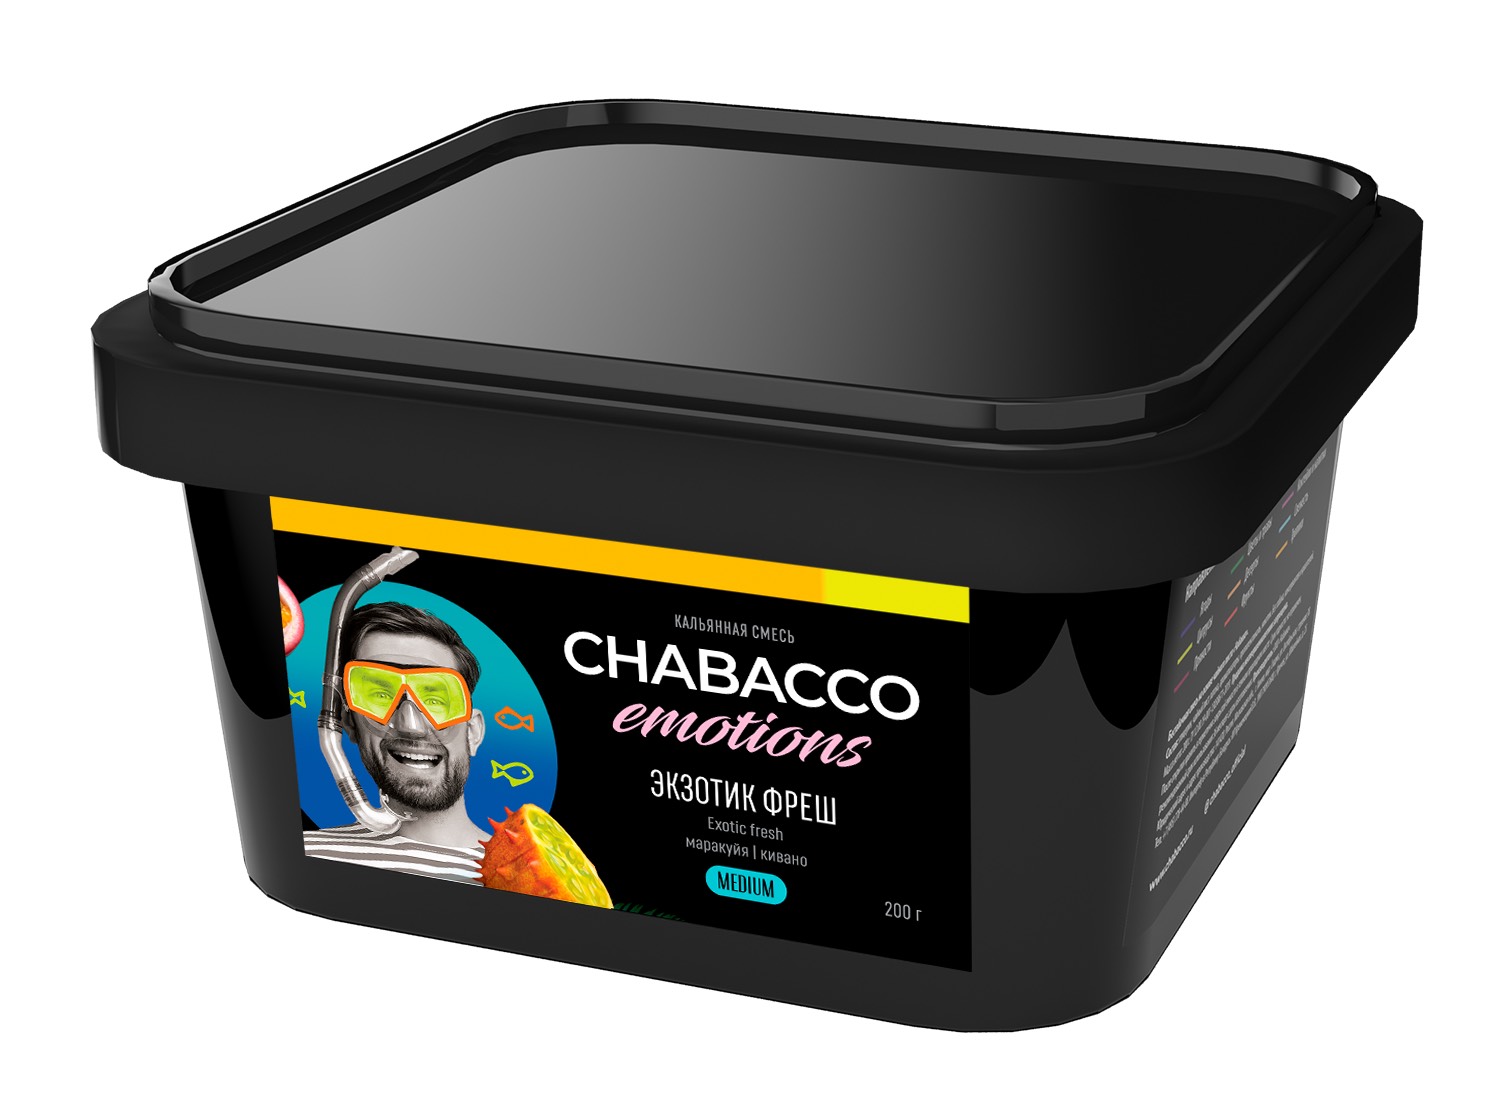 Chabacco - Emotions - EXOTIC fresh ( маракуйя кивано ) - 200 g